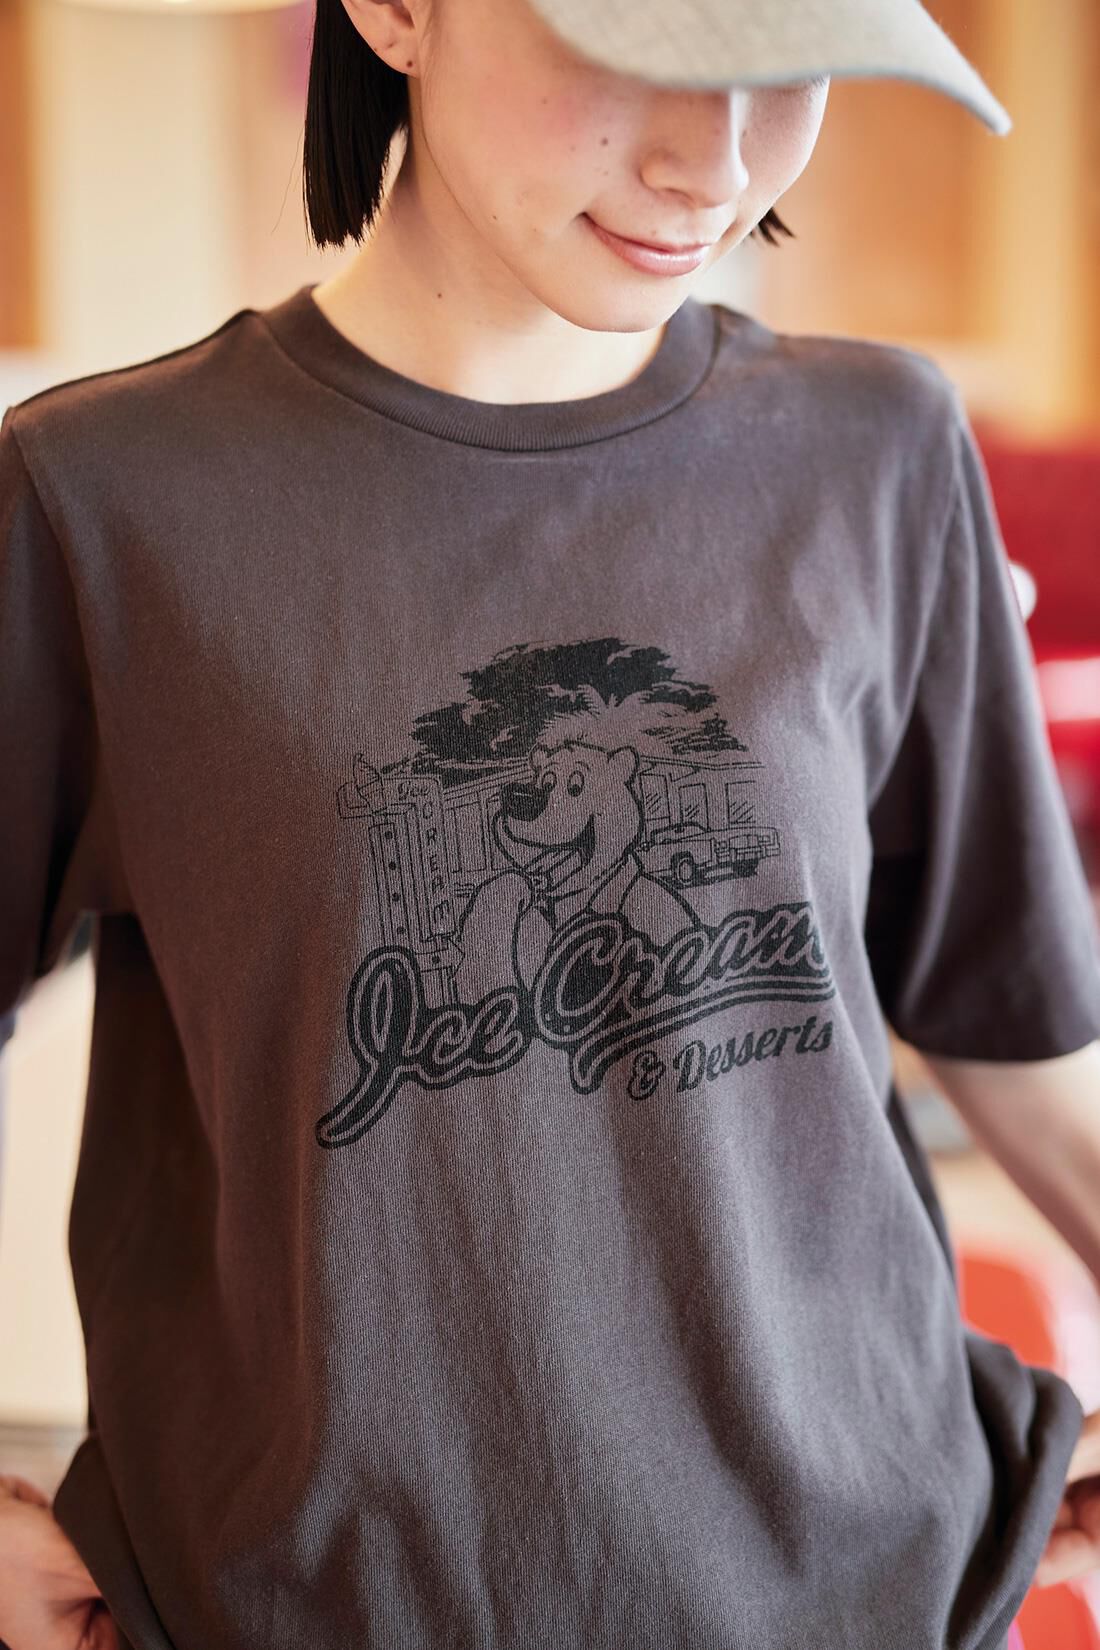 サニークラウズ|サニークラウズ アイス好きなTシャツの会〈レディース〉|これ一枚で着こなしがこなれた表情になるオリジナルプリント。